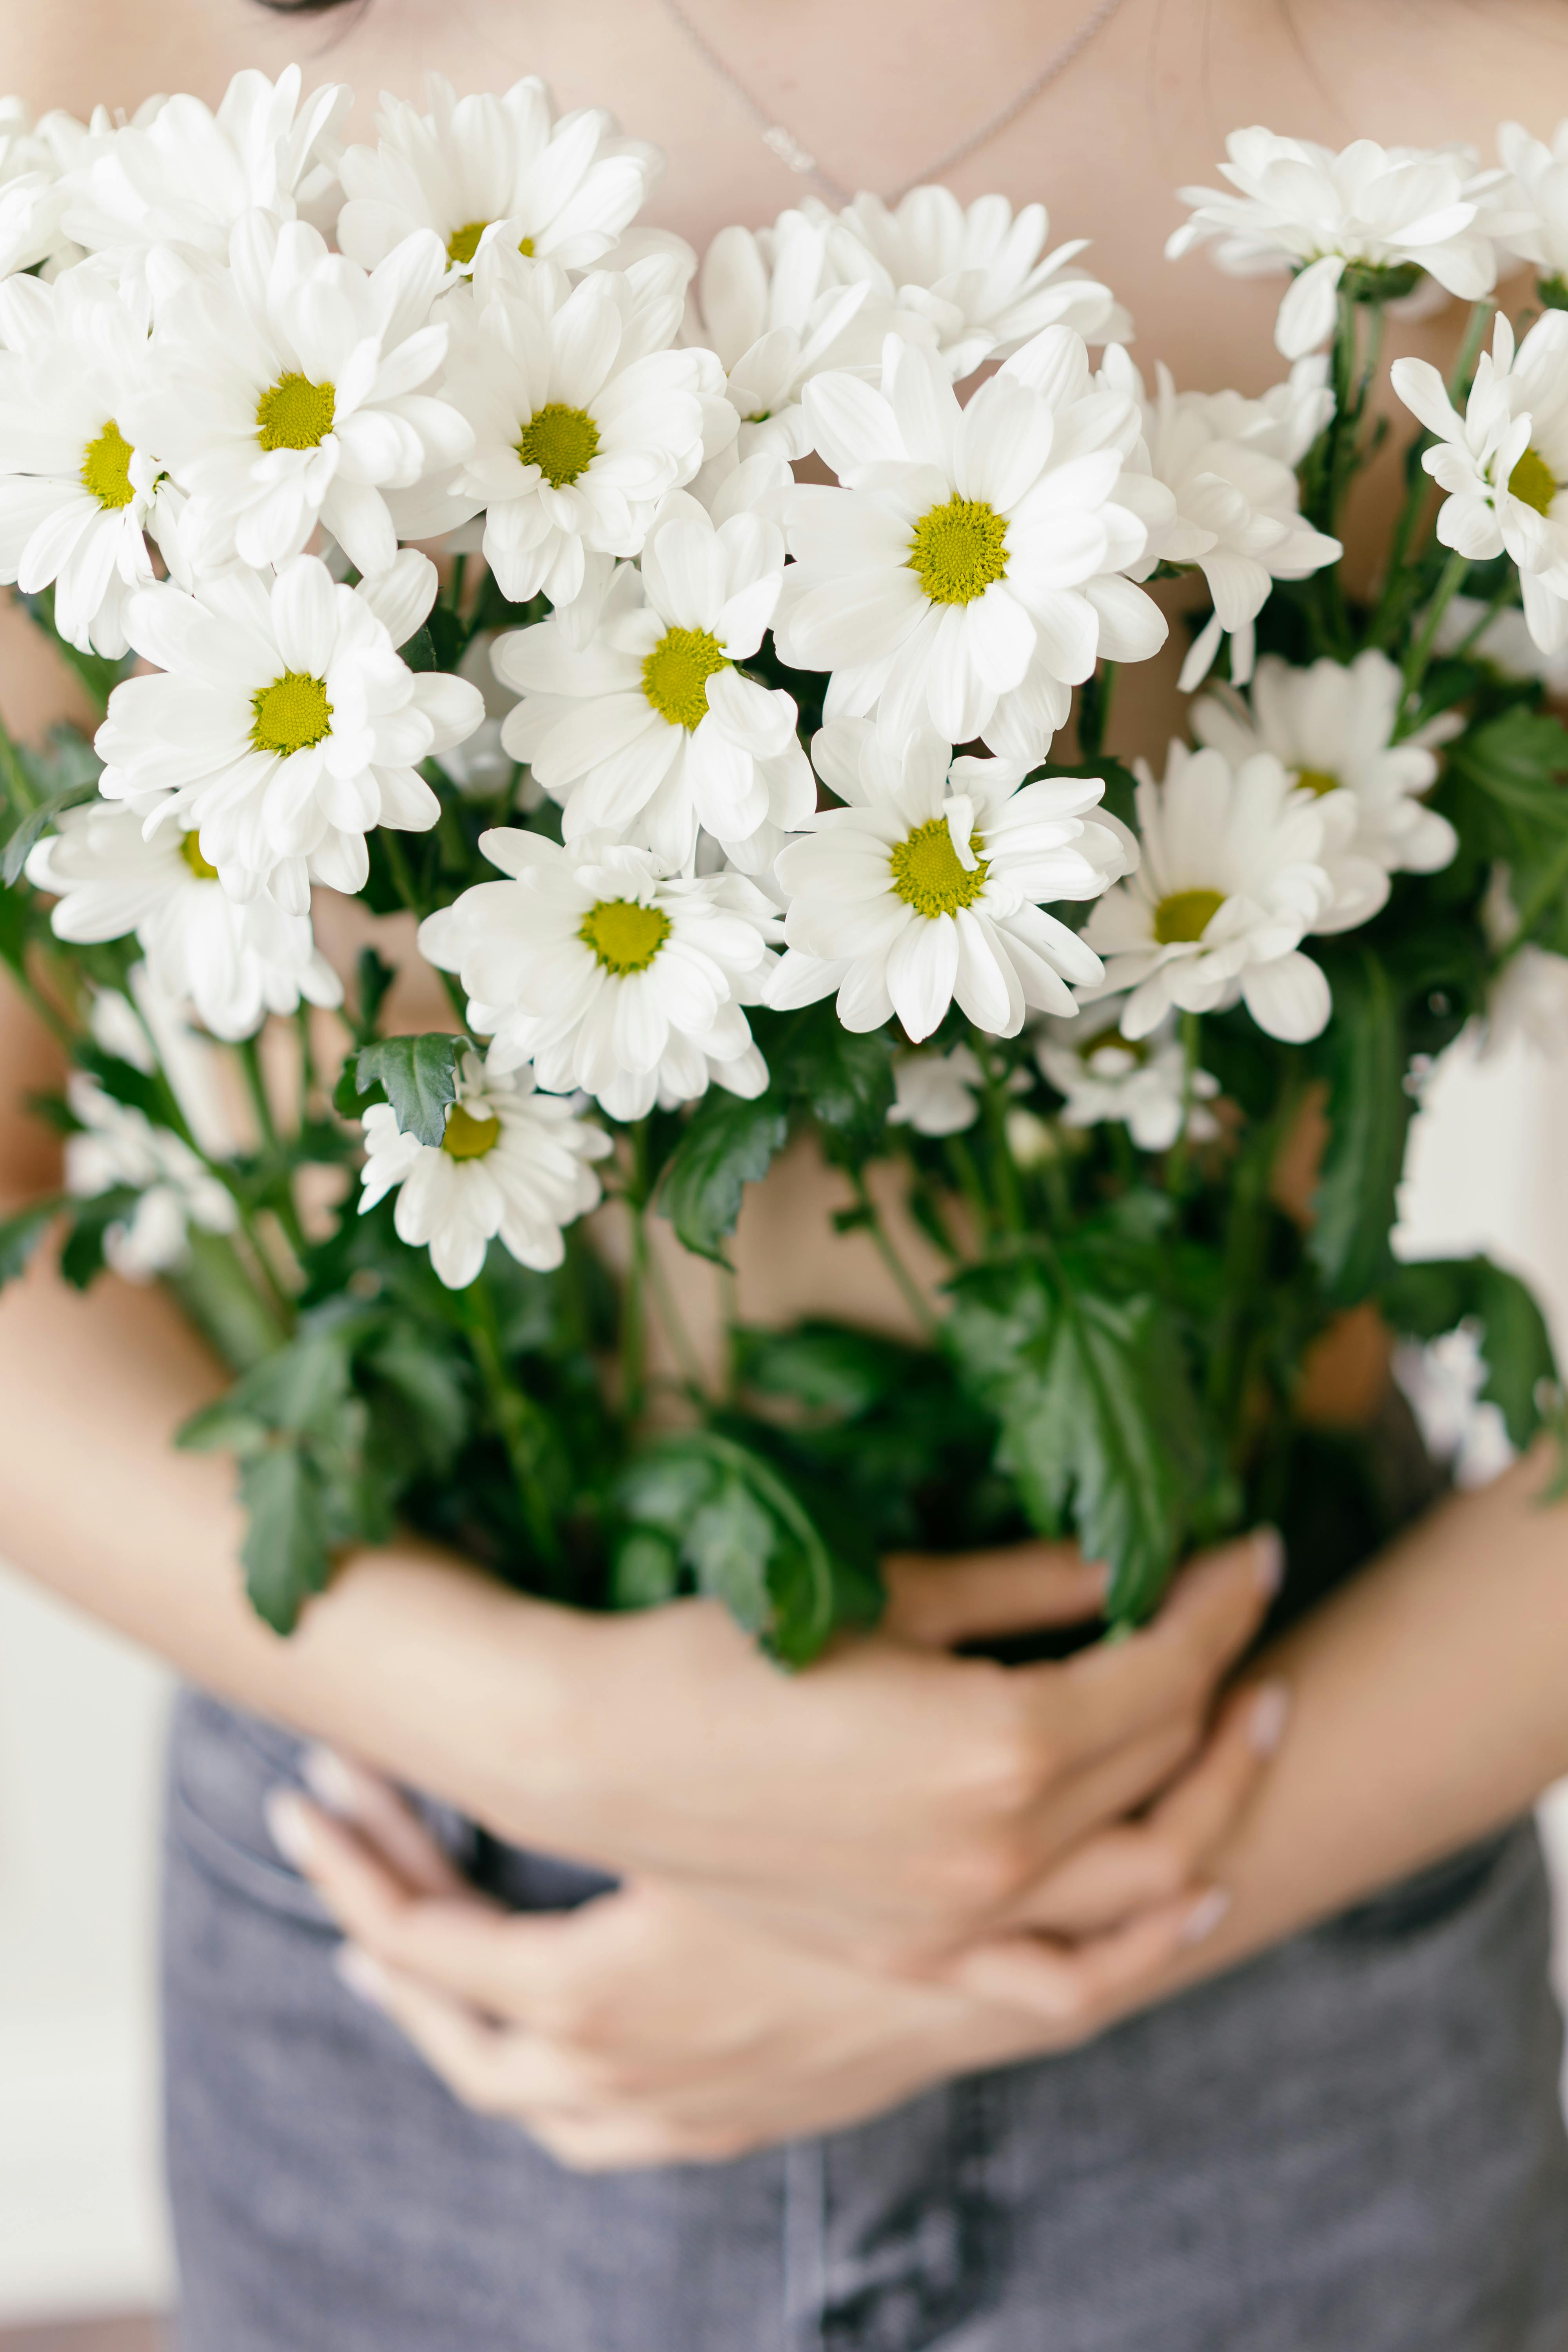 Hãy nhấp chuột vào ảnh hoa trắng xinh đẹp để cảm nhận vẻ đẹp thuần khiết và sức sống mãnh liệt của chúng! Những cánh hoa trắng sẽ làm cho tâm hồn bạn thư giãn và cảm thấy yên bình.